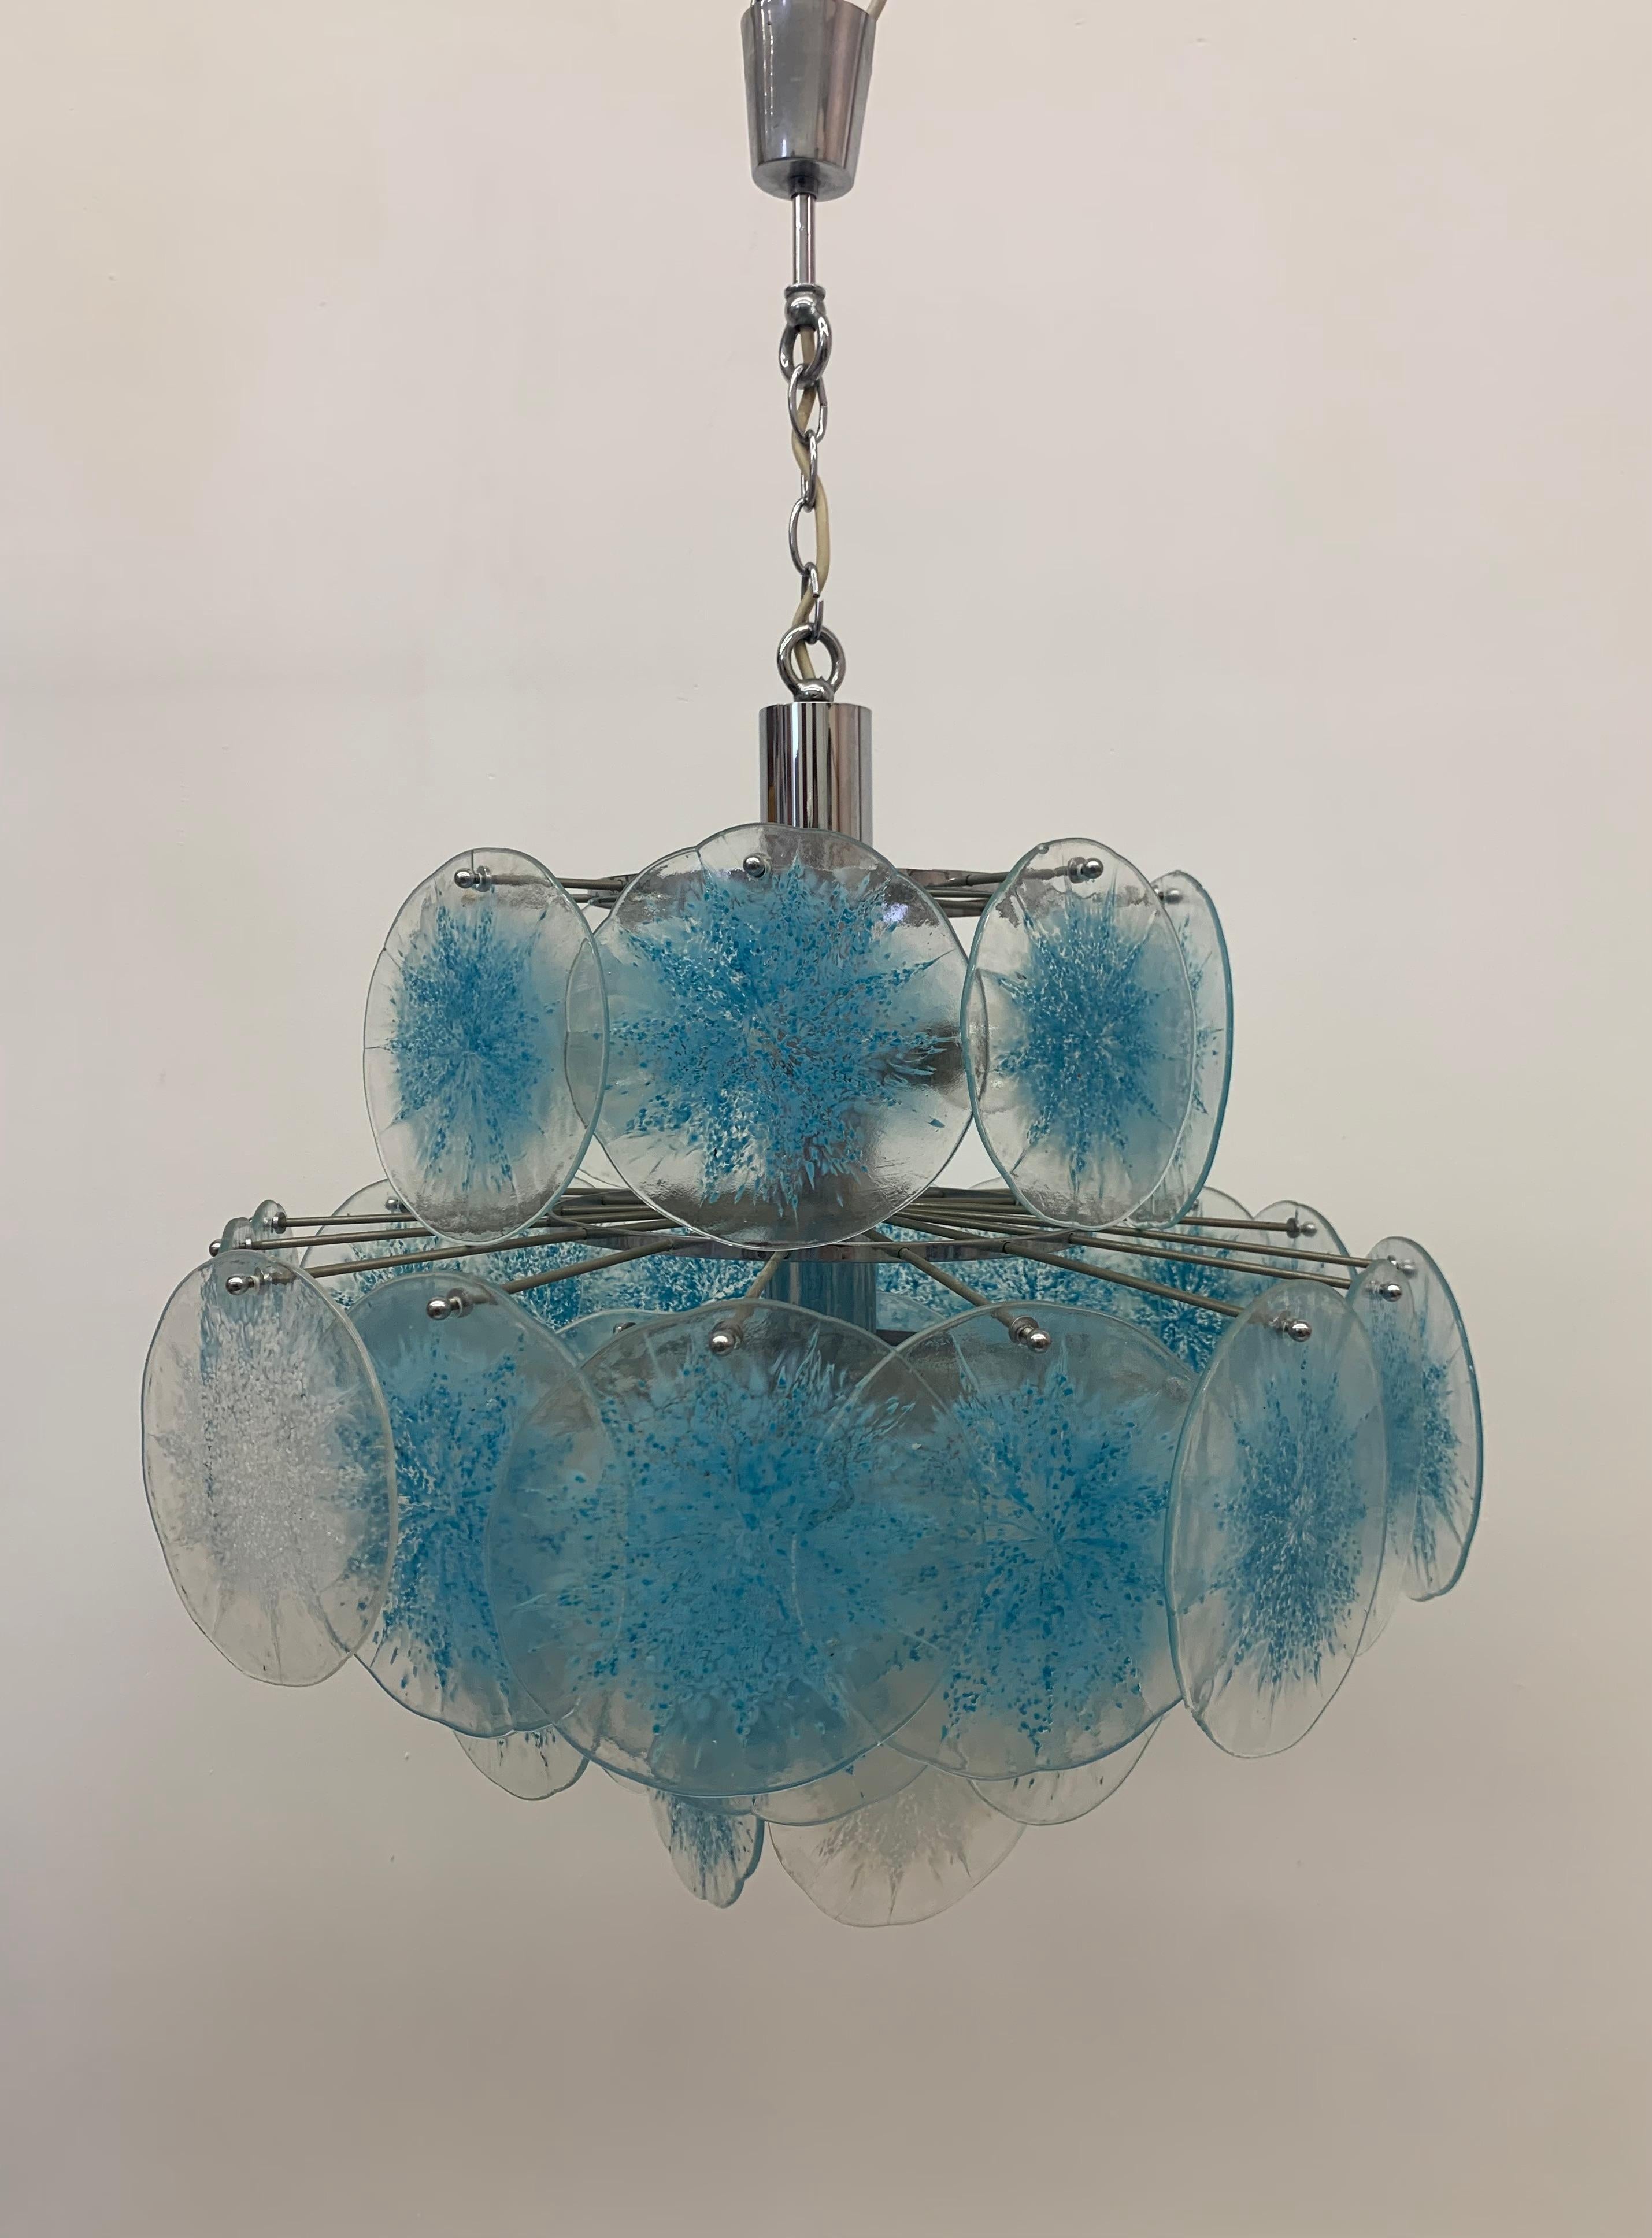 Eine sehr schöne Vistosi Scheibe  Licht, mundgeblasenes Murano-Glas in Scheibenform  auf einer verchromten Stahlstruktur. 6 Glühbirnen. Höhenverstellbar, italienisches Design von Vistosi. In gutem Betriebszustand.